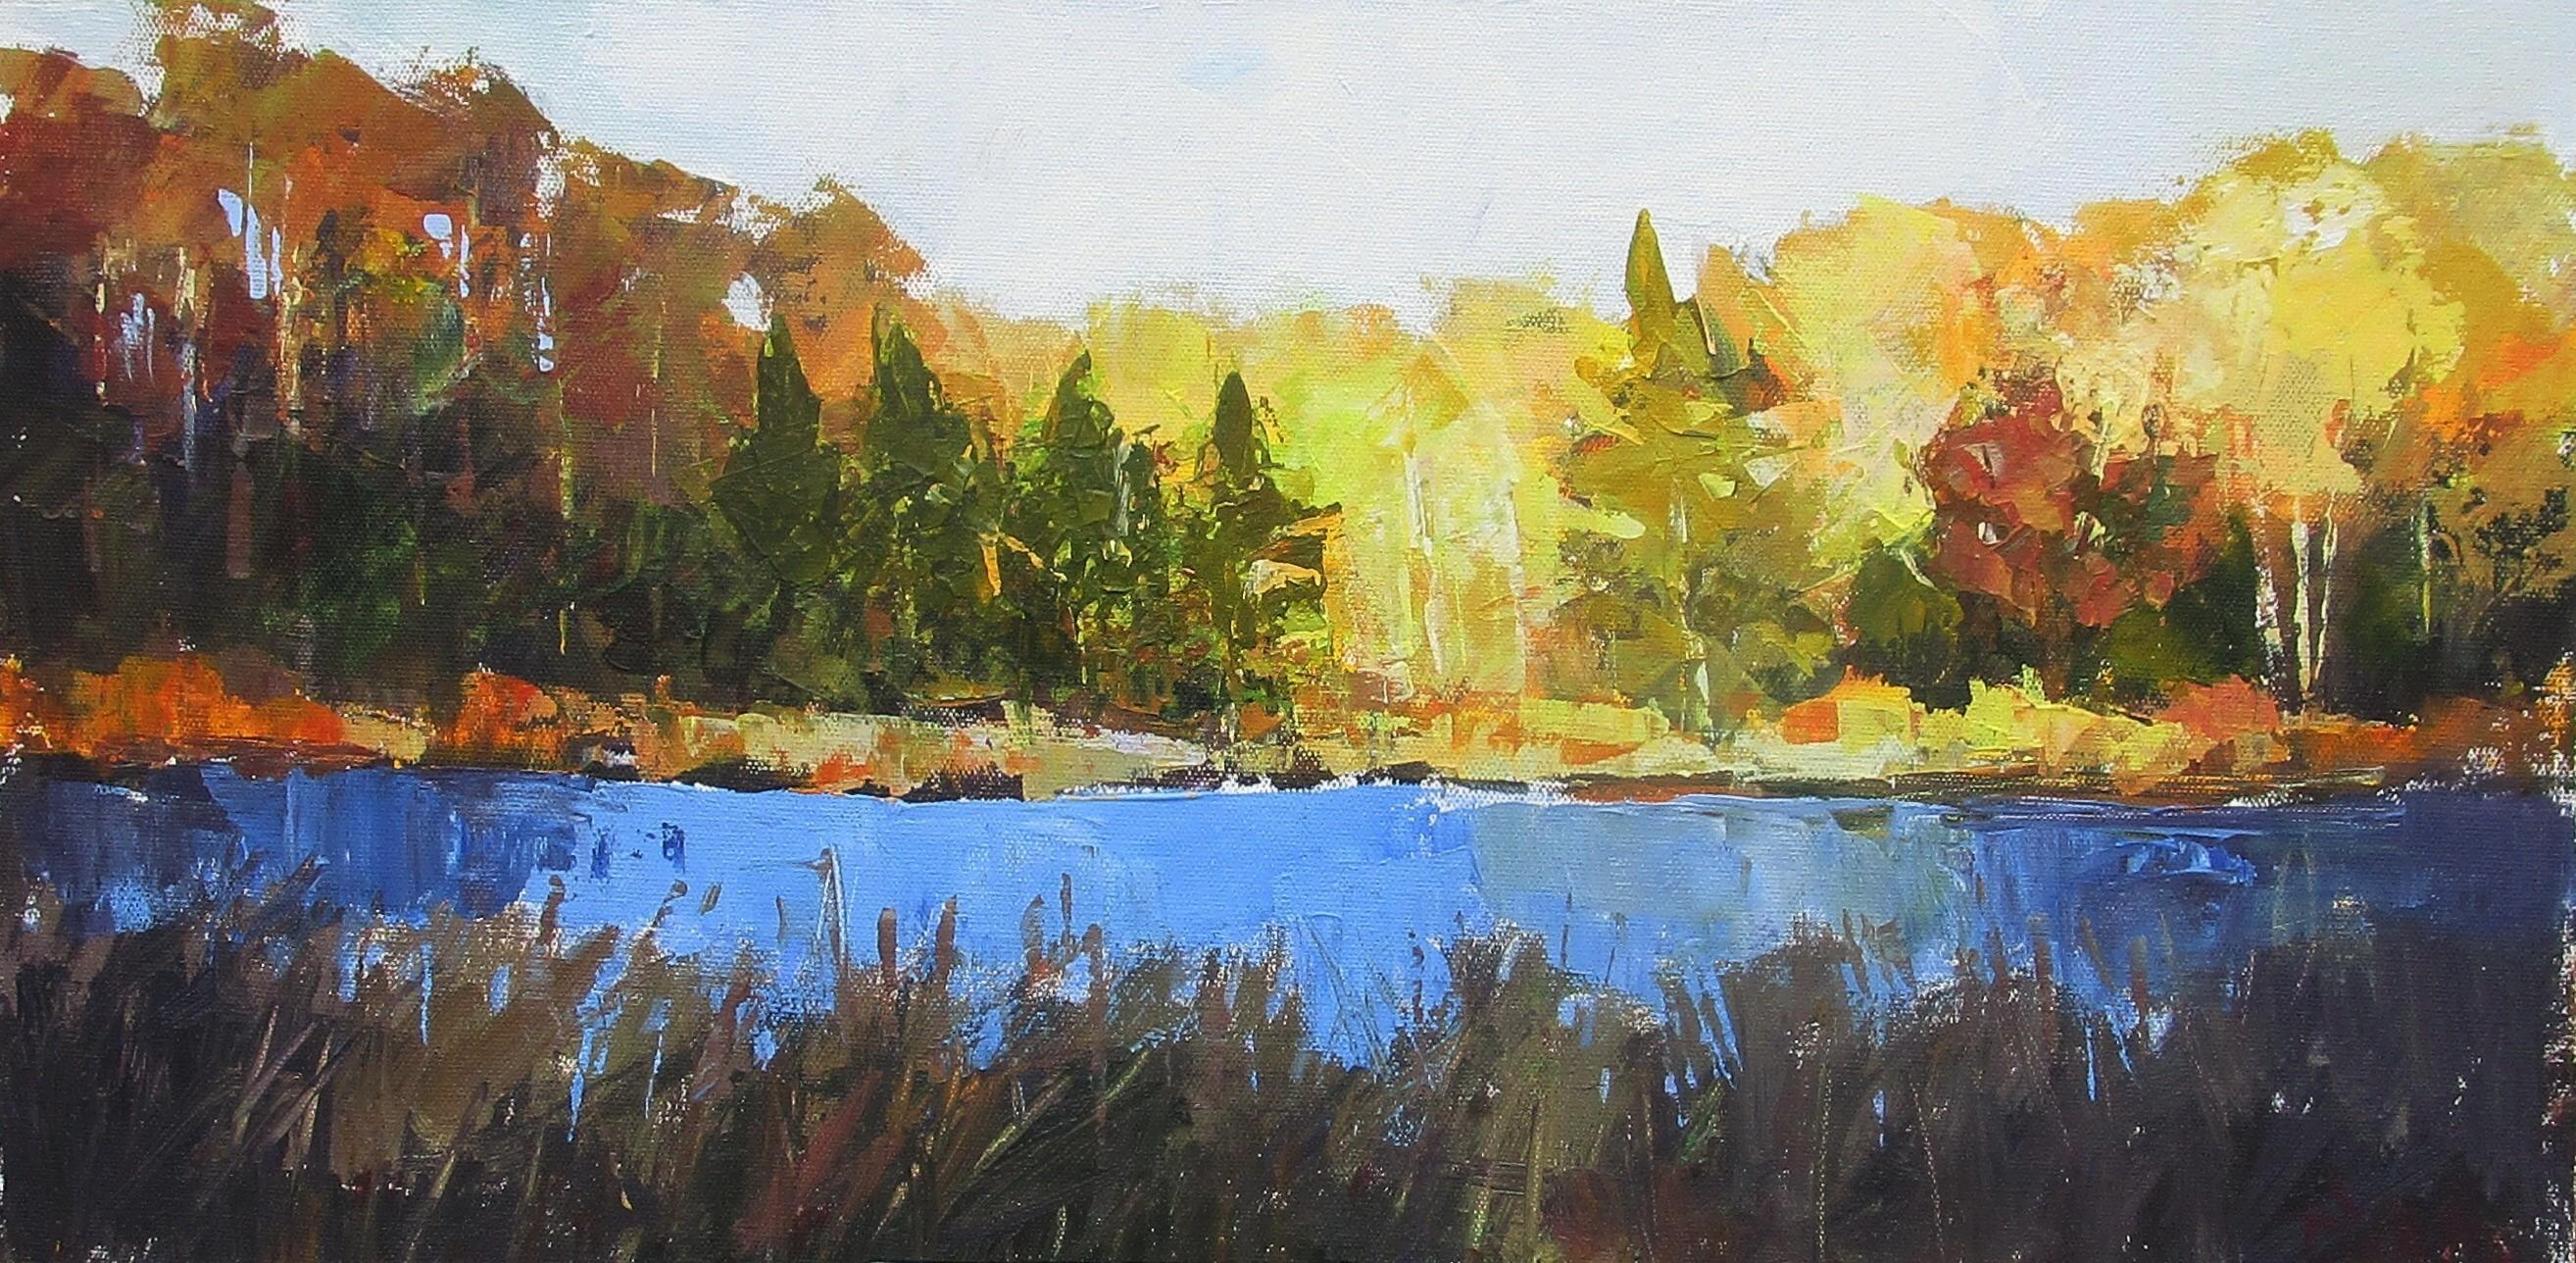 Janet Dyer Landscape Painting - Nature Preserve Pond, Autumn, Original Painting